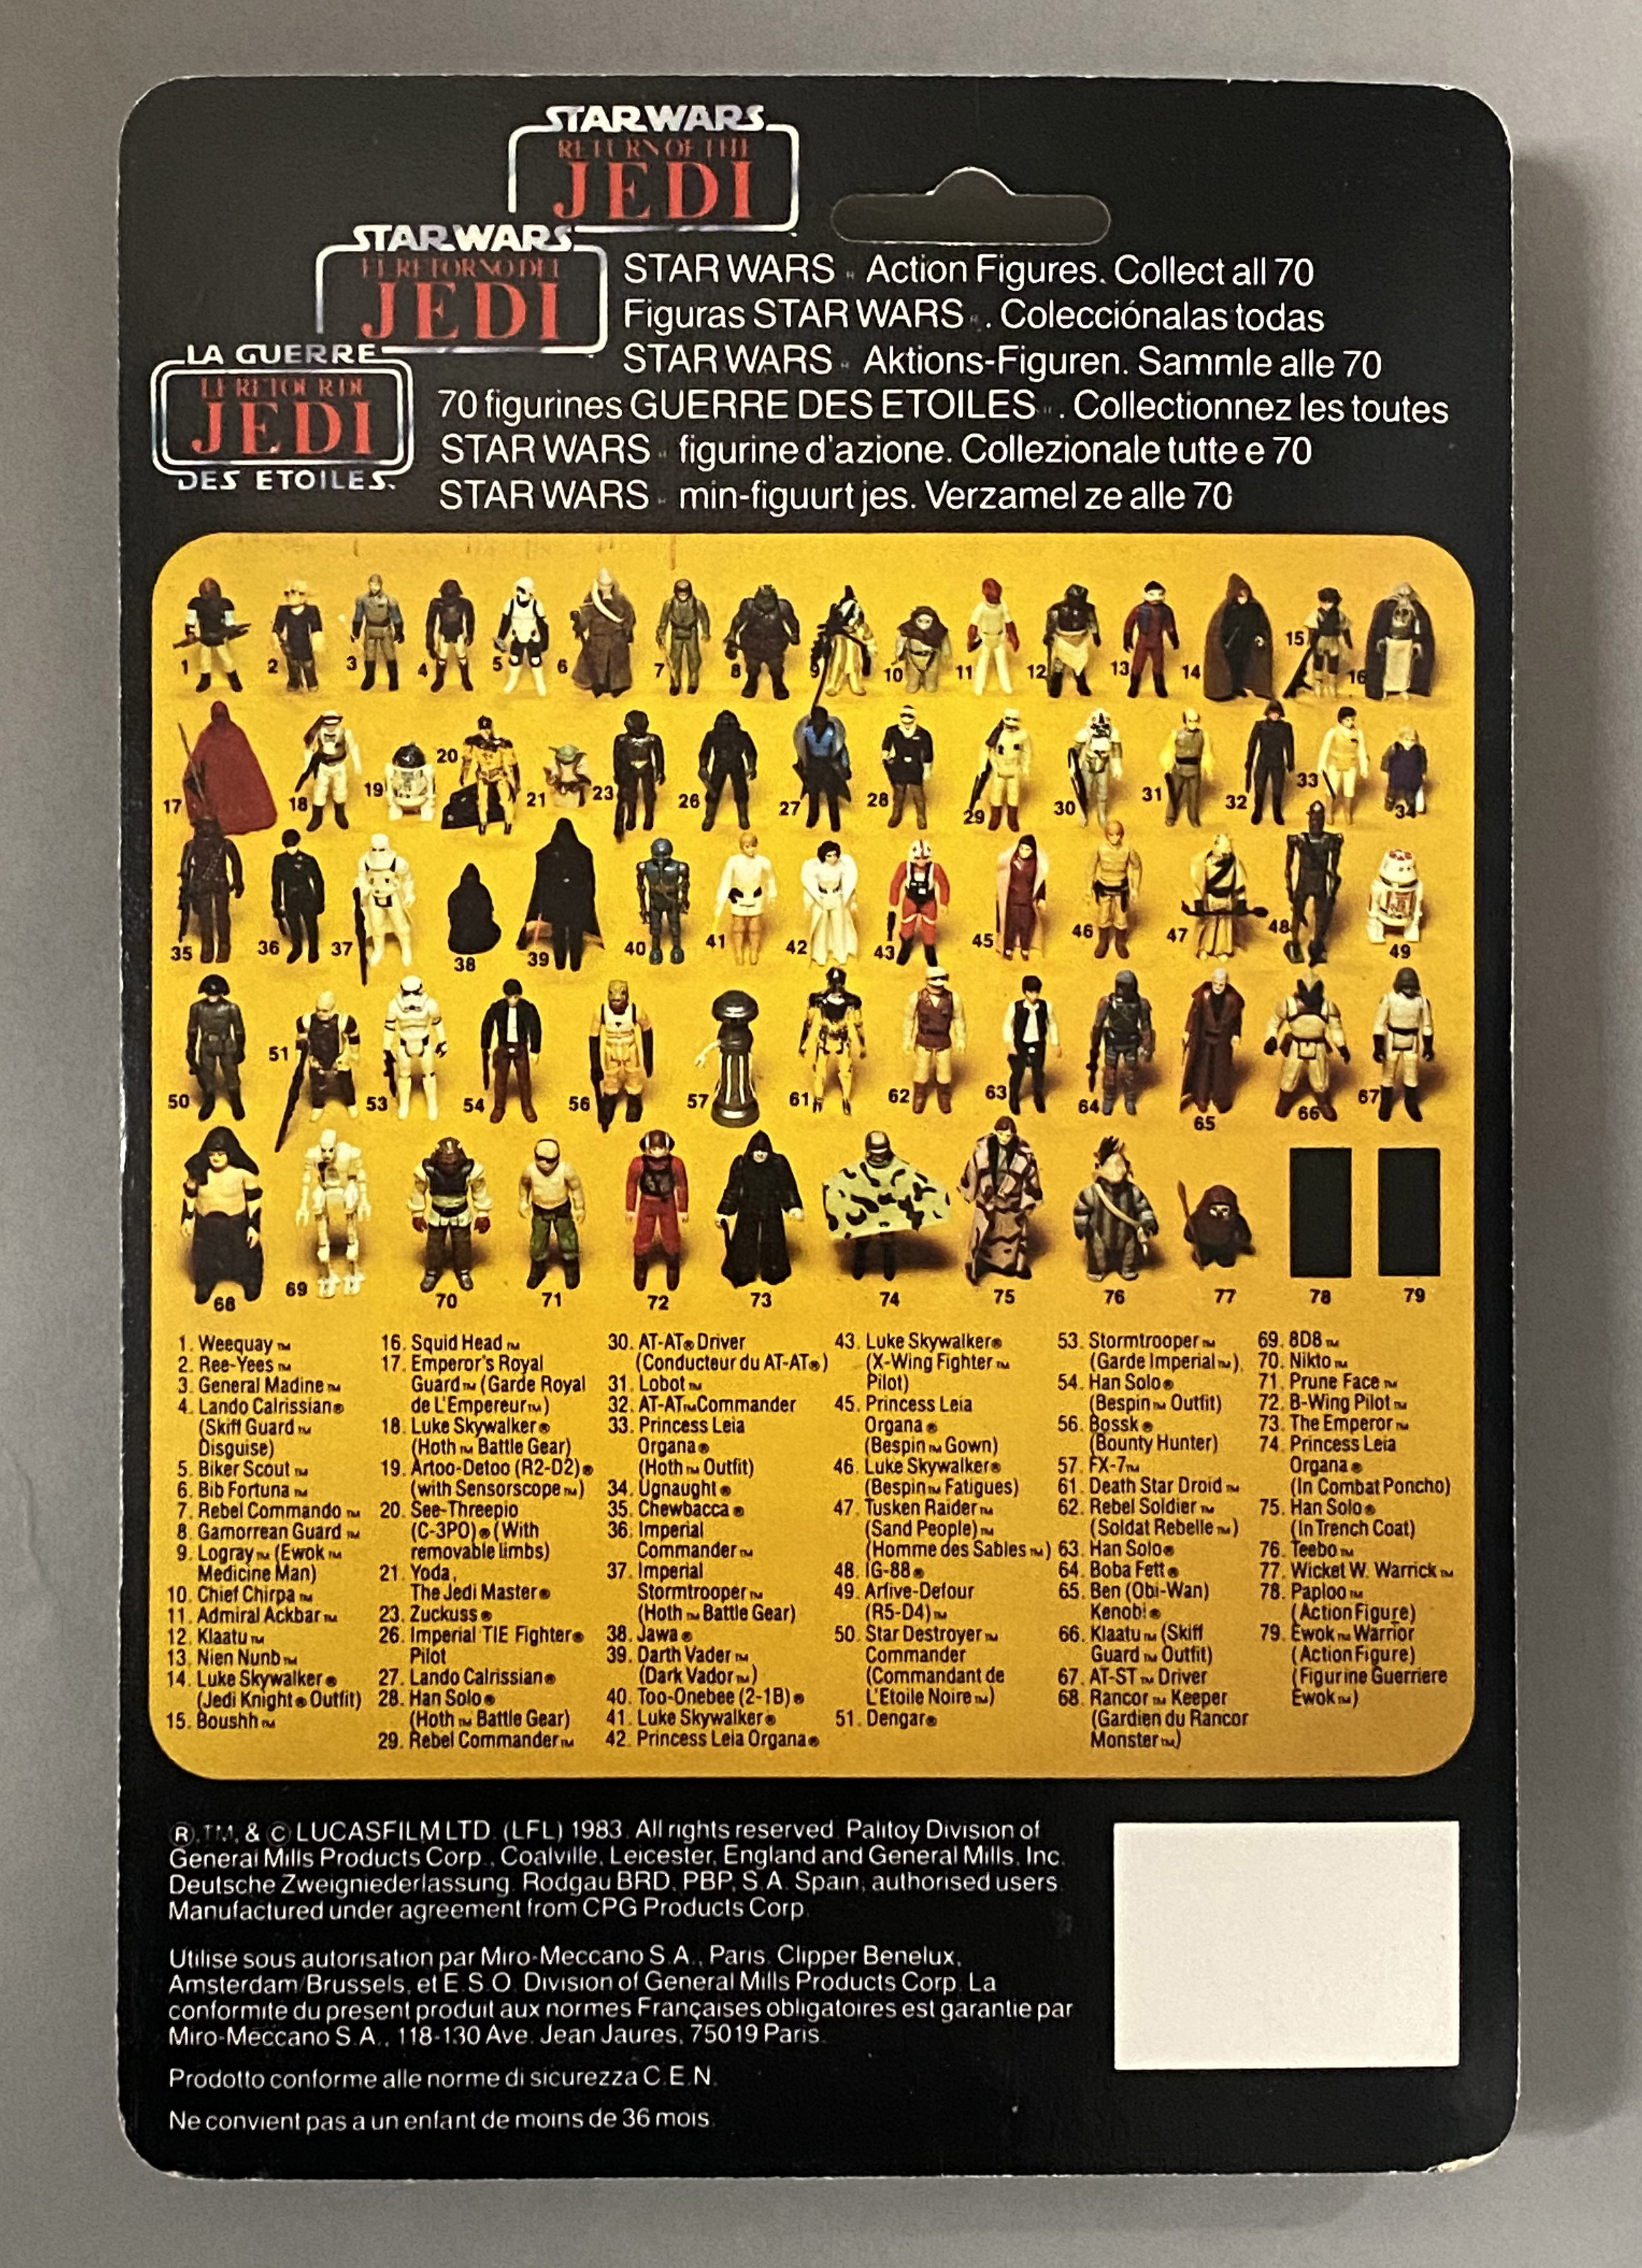 5 vintage Star Wars ROTJ Return Of The Jedi Tri-Logo figures on original backing cards: Prune Face, - Image 9 of 11